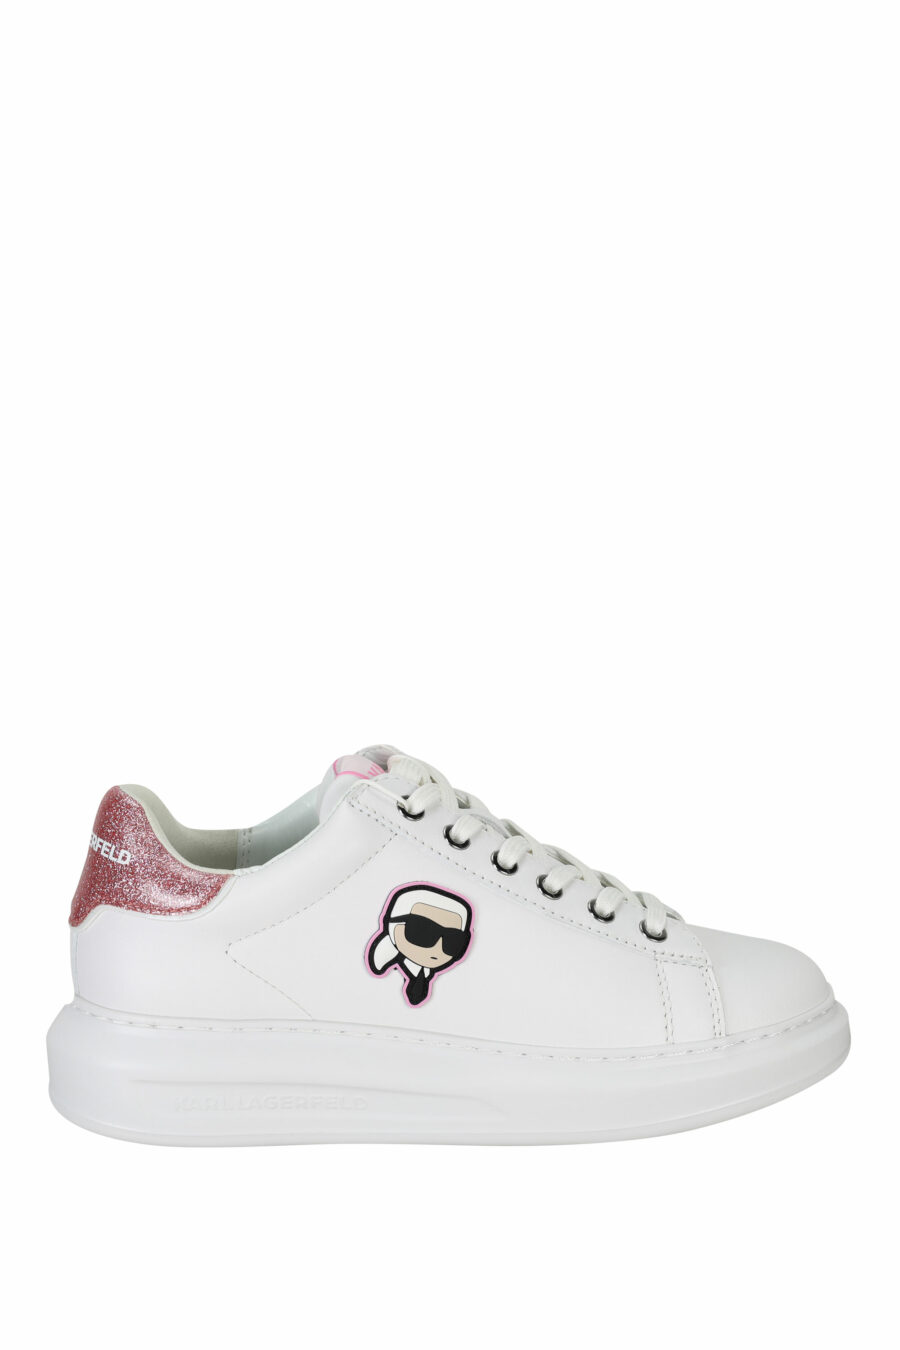 Zapatillas blancas "Kapri" con logo en goma y detalle rosa - 5059529351099